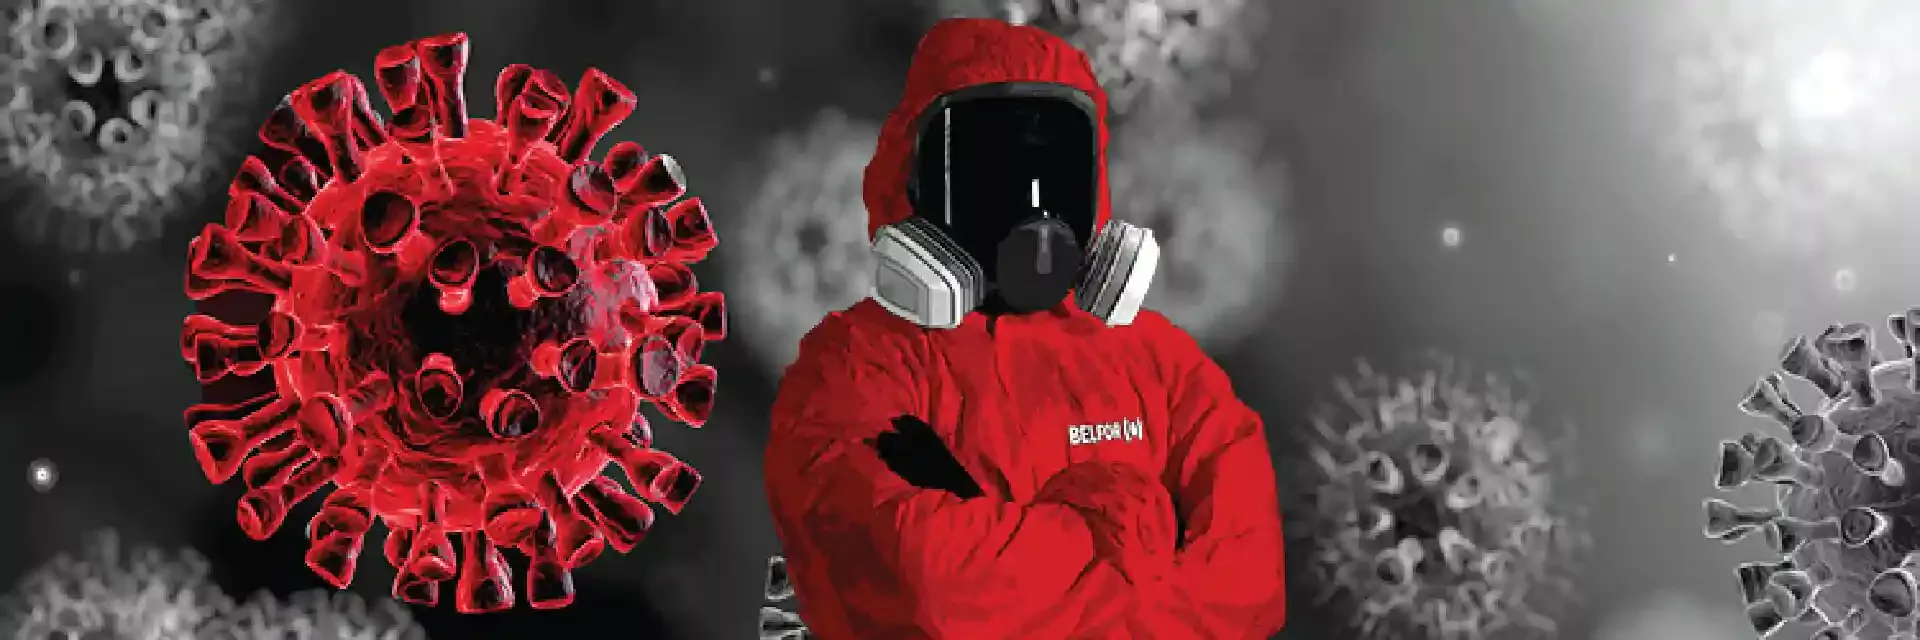 BELFOR biohazard technician in red protective gear